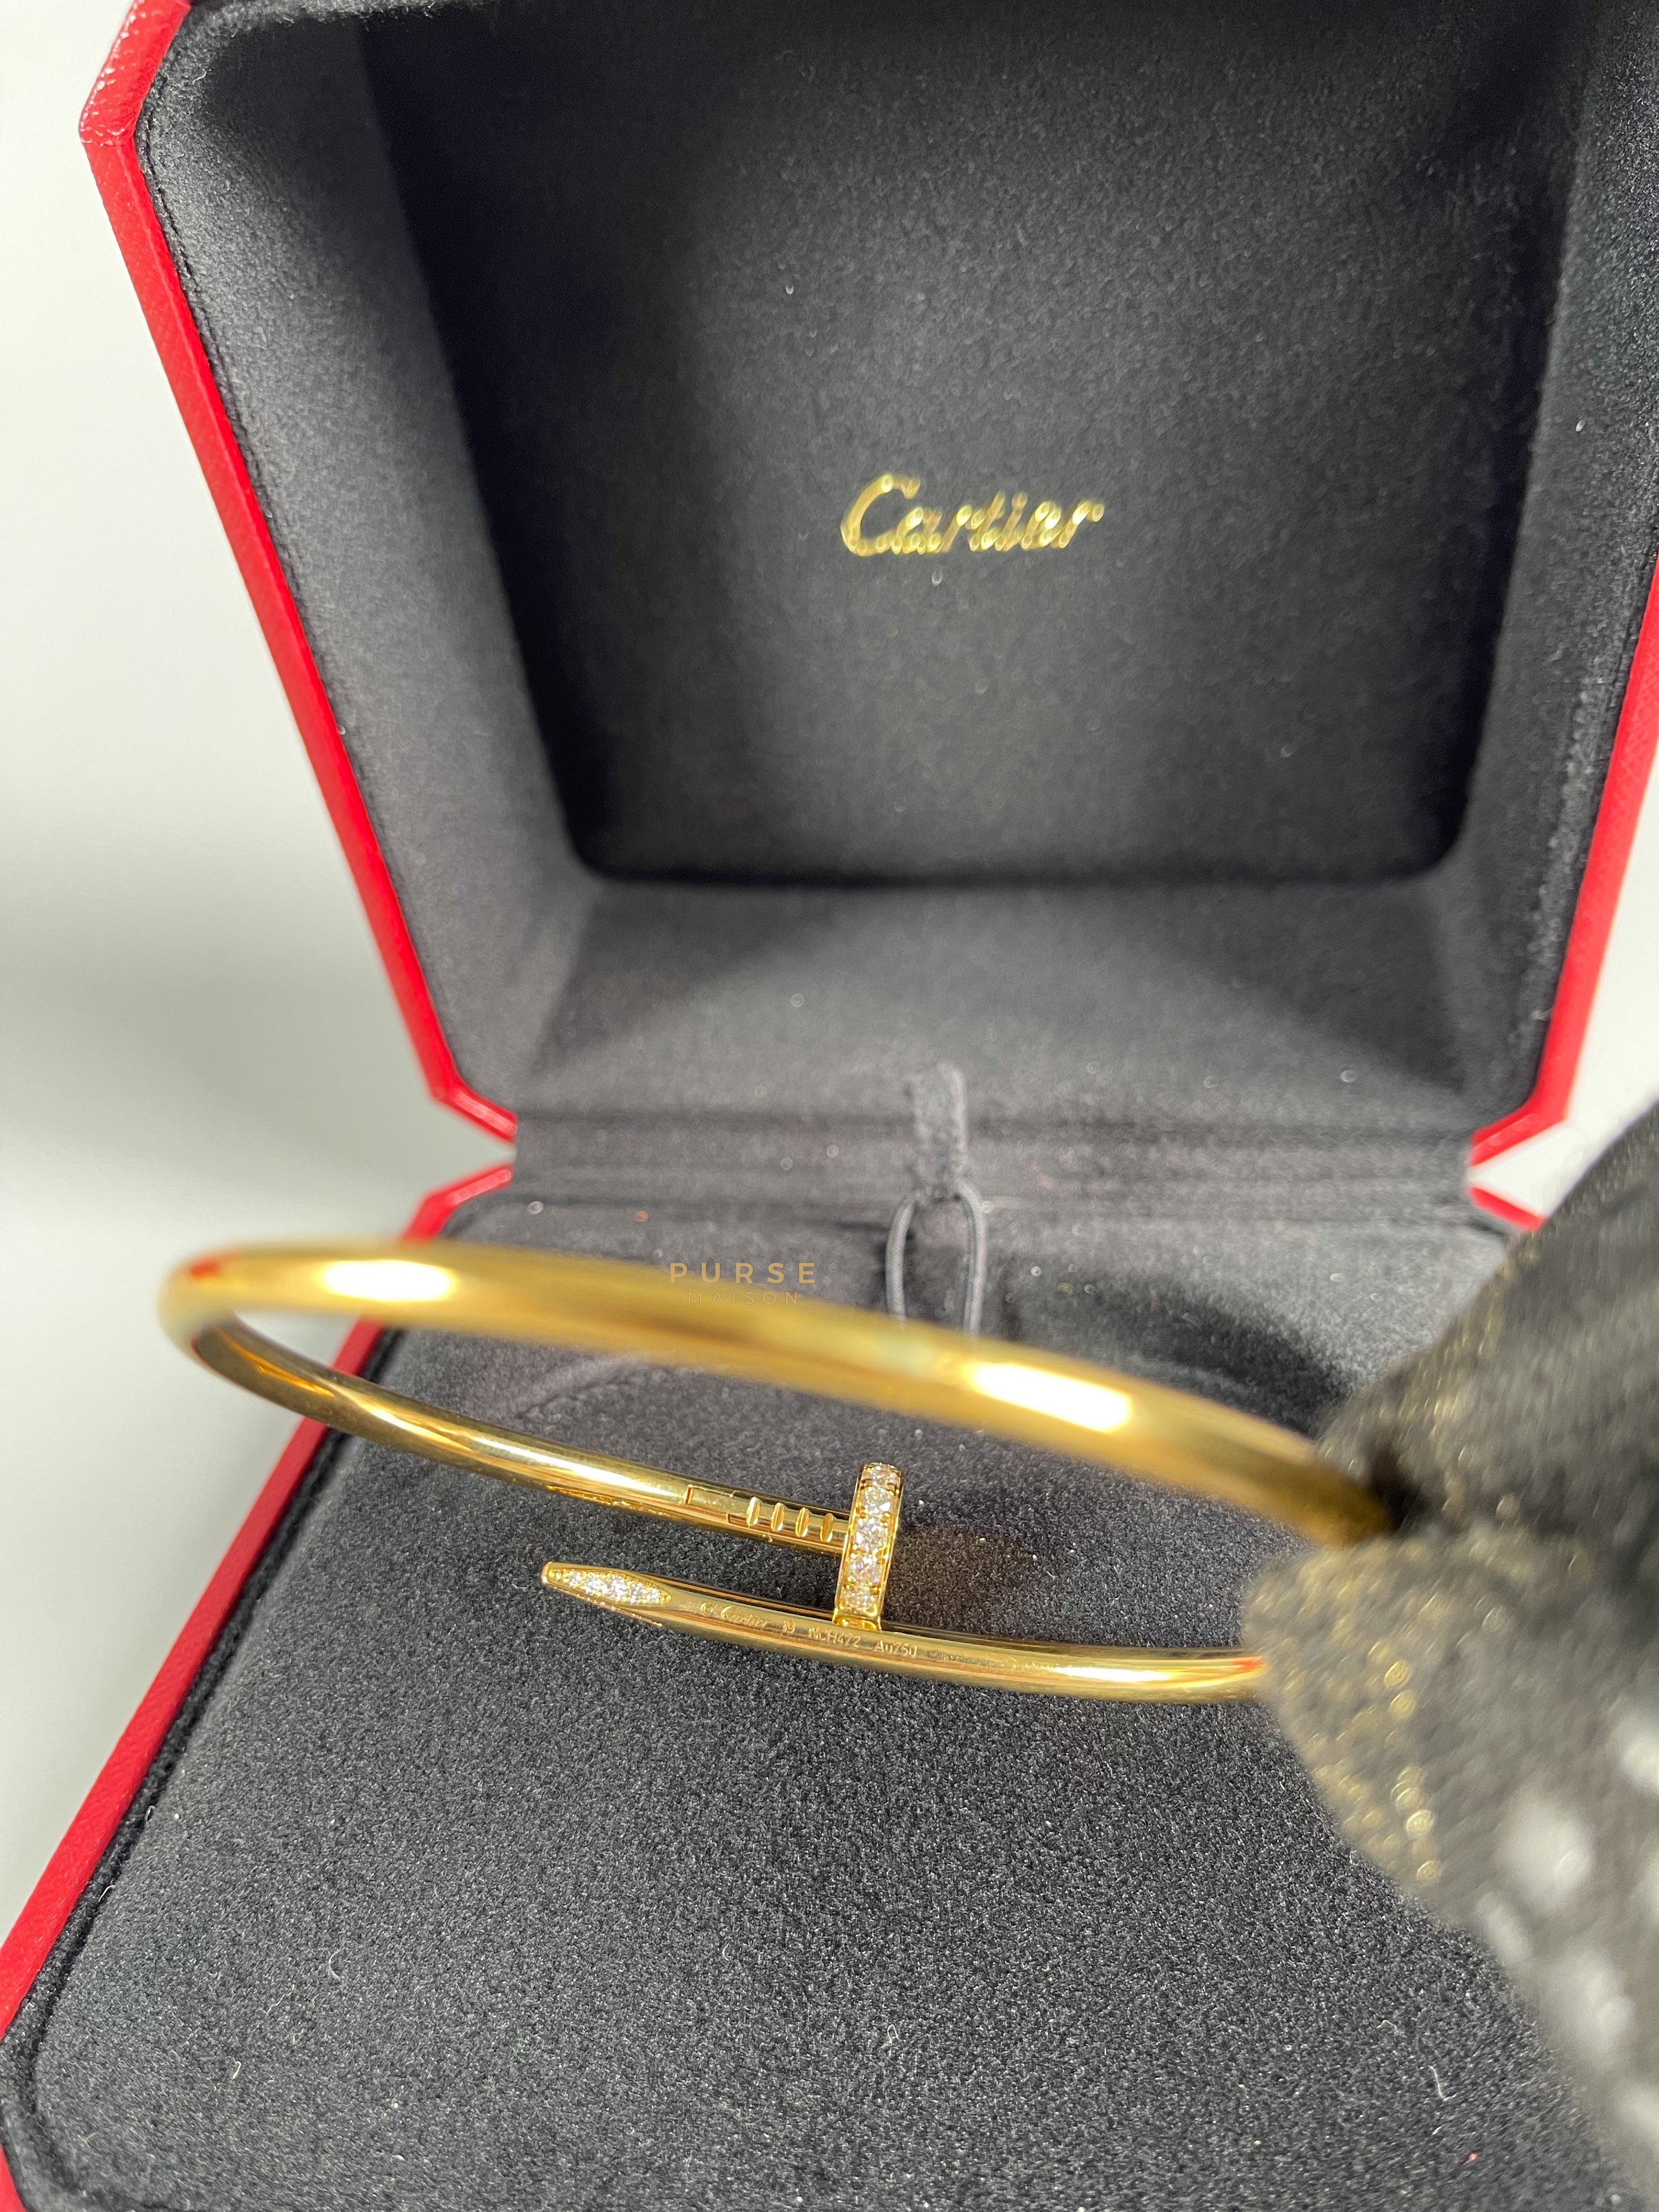 Cartier Juste Un Clou with Diamonds Yellow Gold Bangle (Size 19) | Purse Maison Luxury Bags Shop